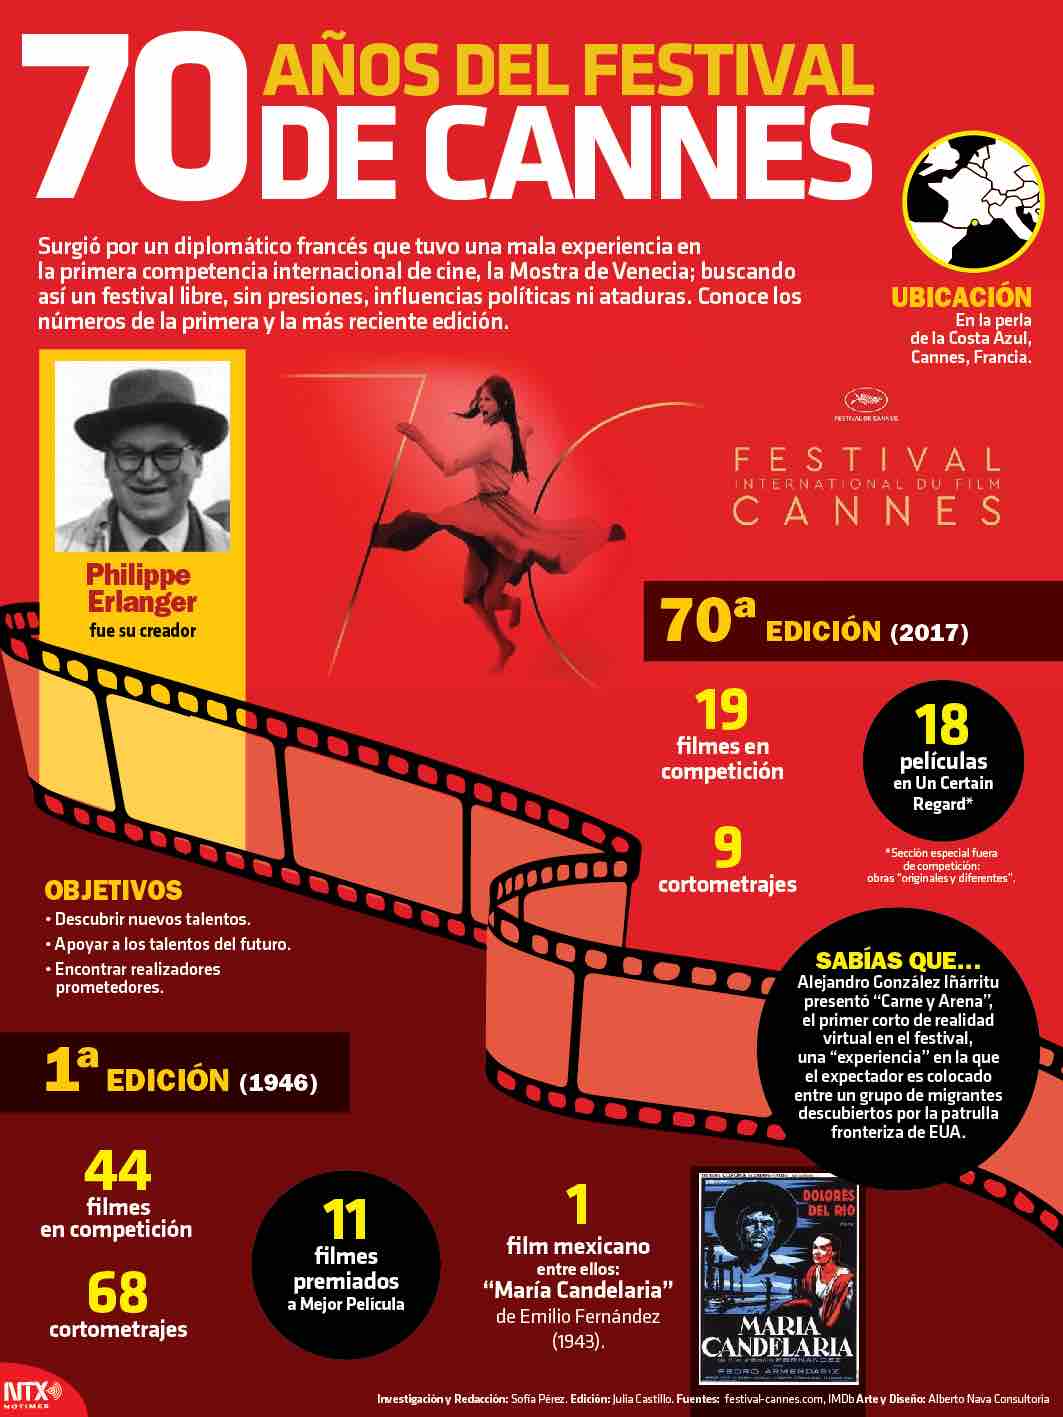 70 años del festival de Cannes